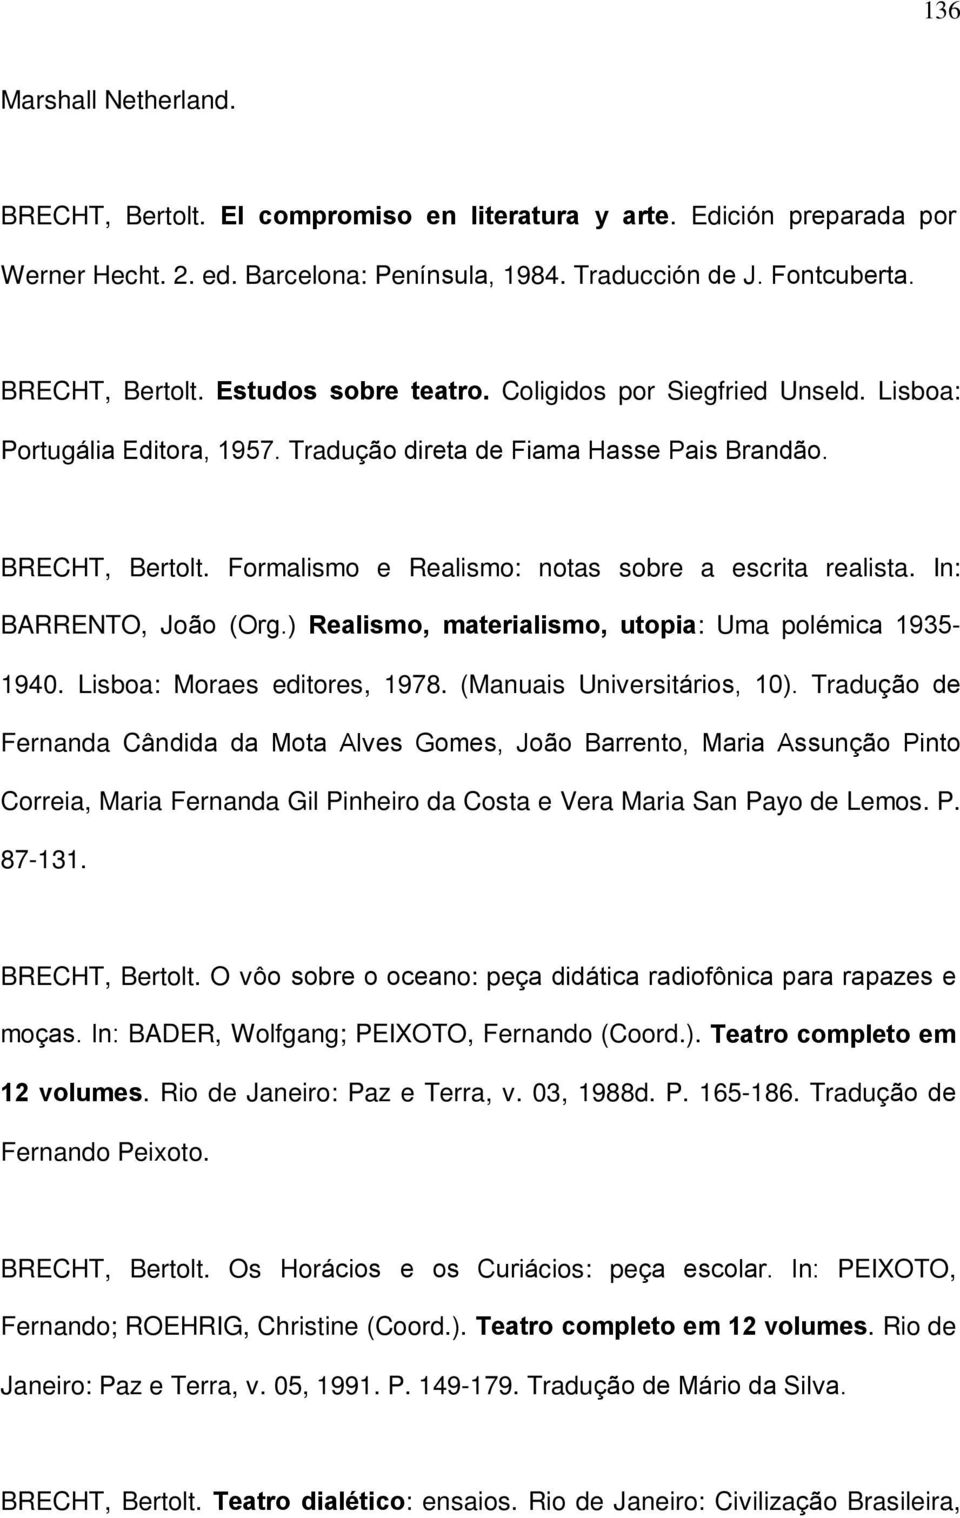 In: BARRENTO, João (Org.) Realismo, materialismo, utopia: Uma polémica 1935-1940. Lisboa: Moraes editores, 1978. (Manuais Universitários, 10).